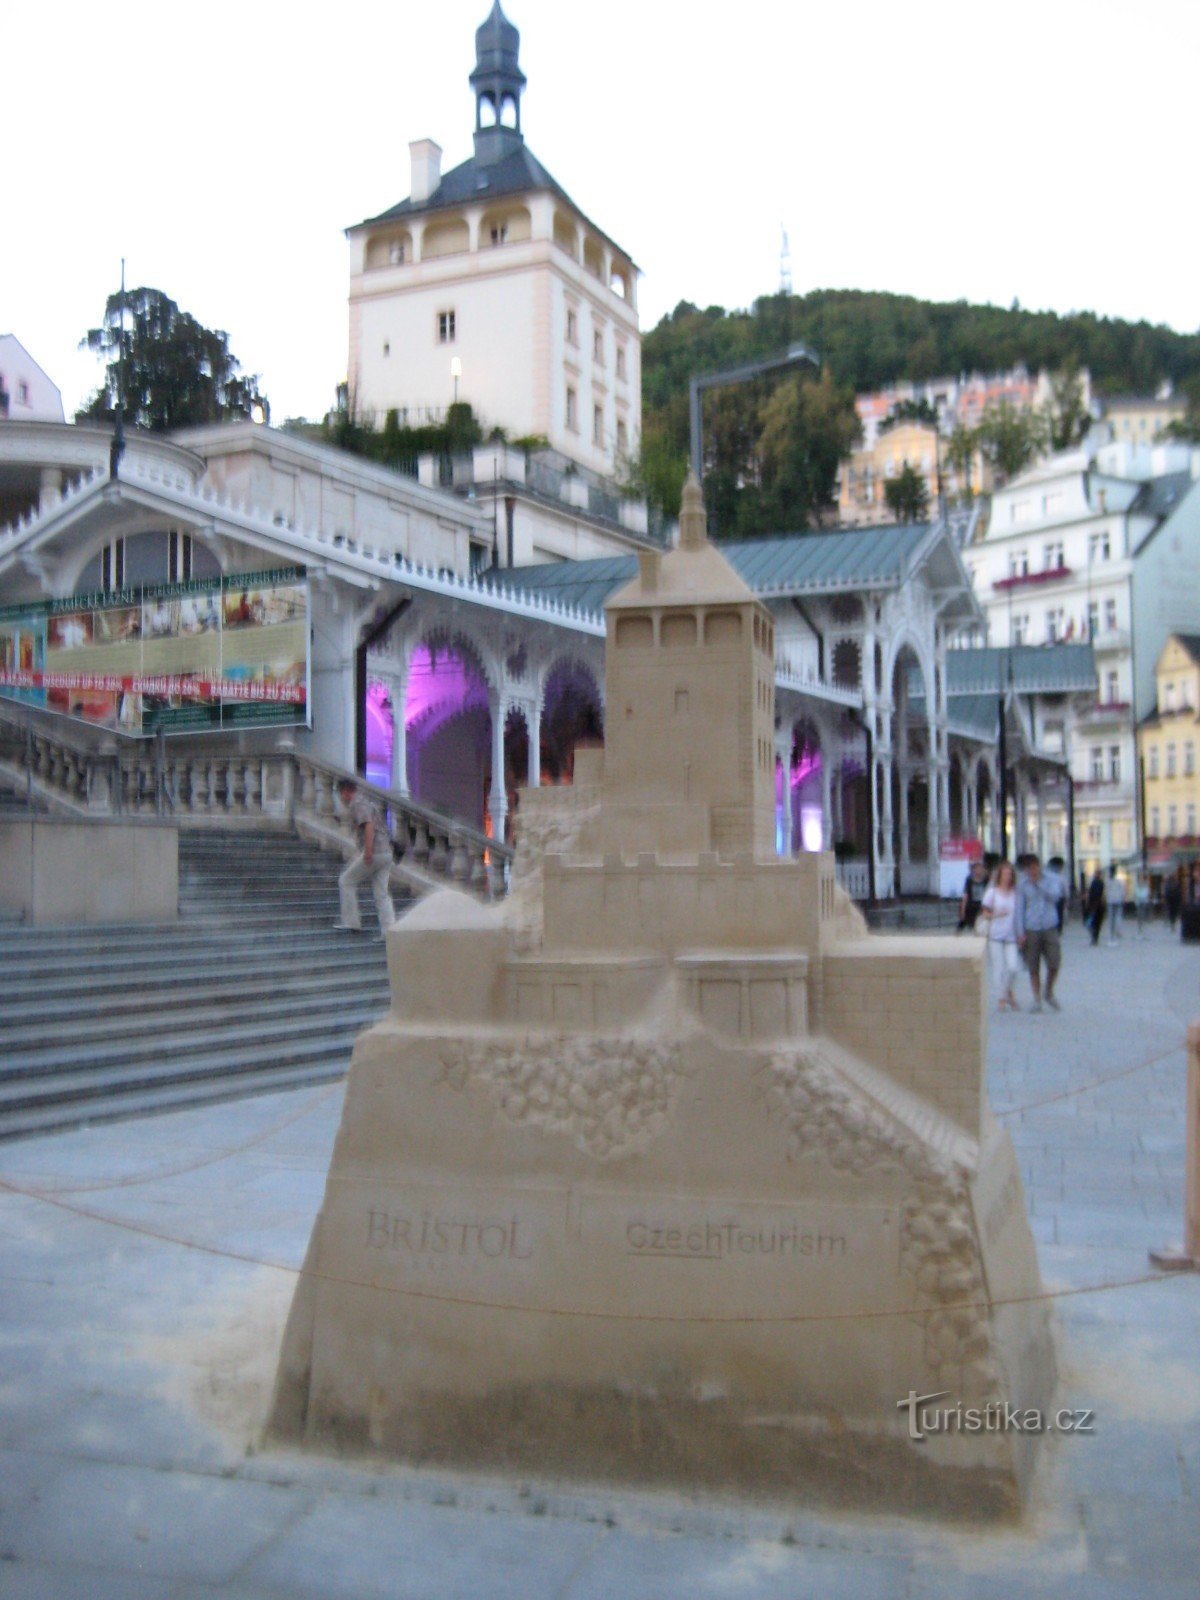 Socha z písku: Zámecká věž v Karlovy Vary